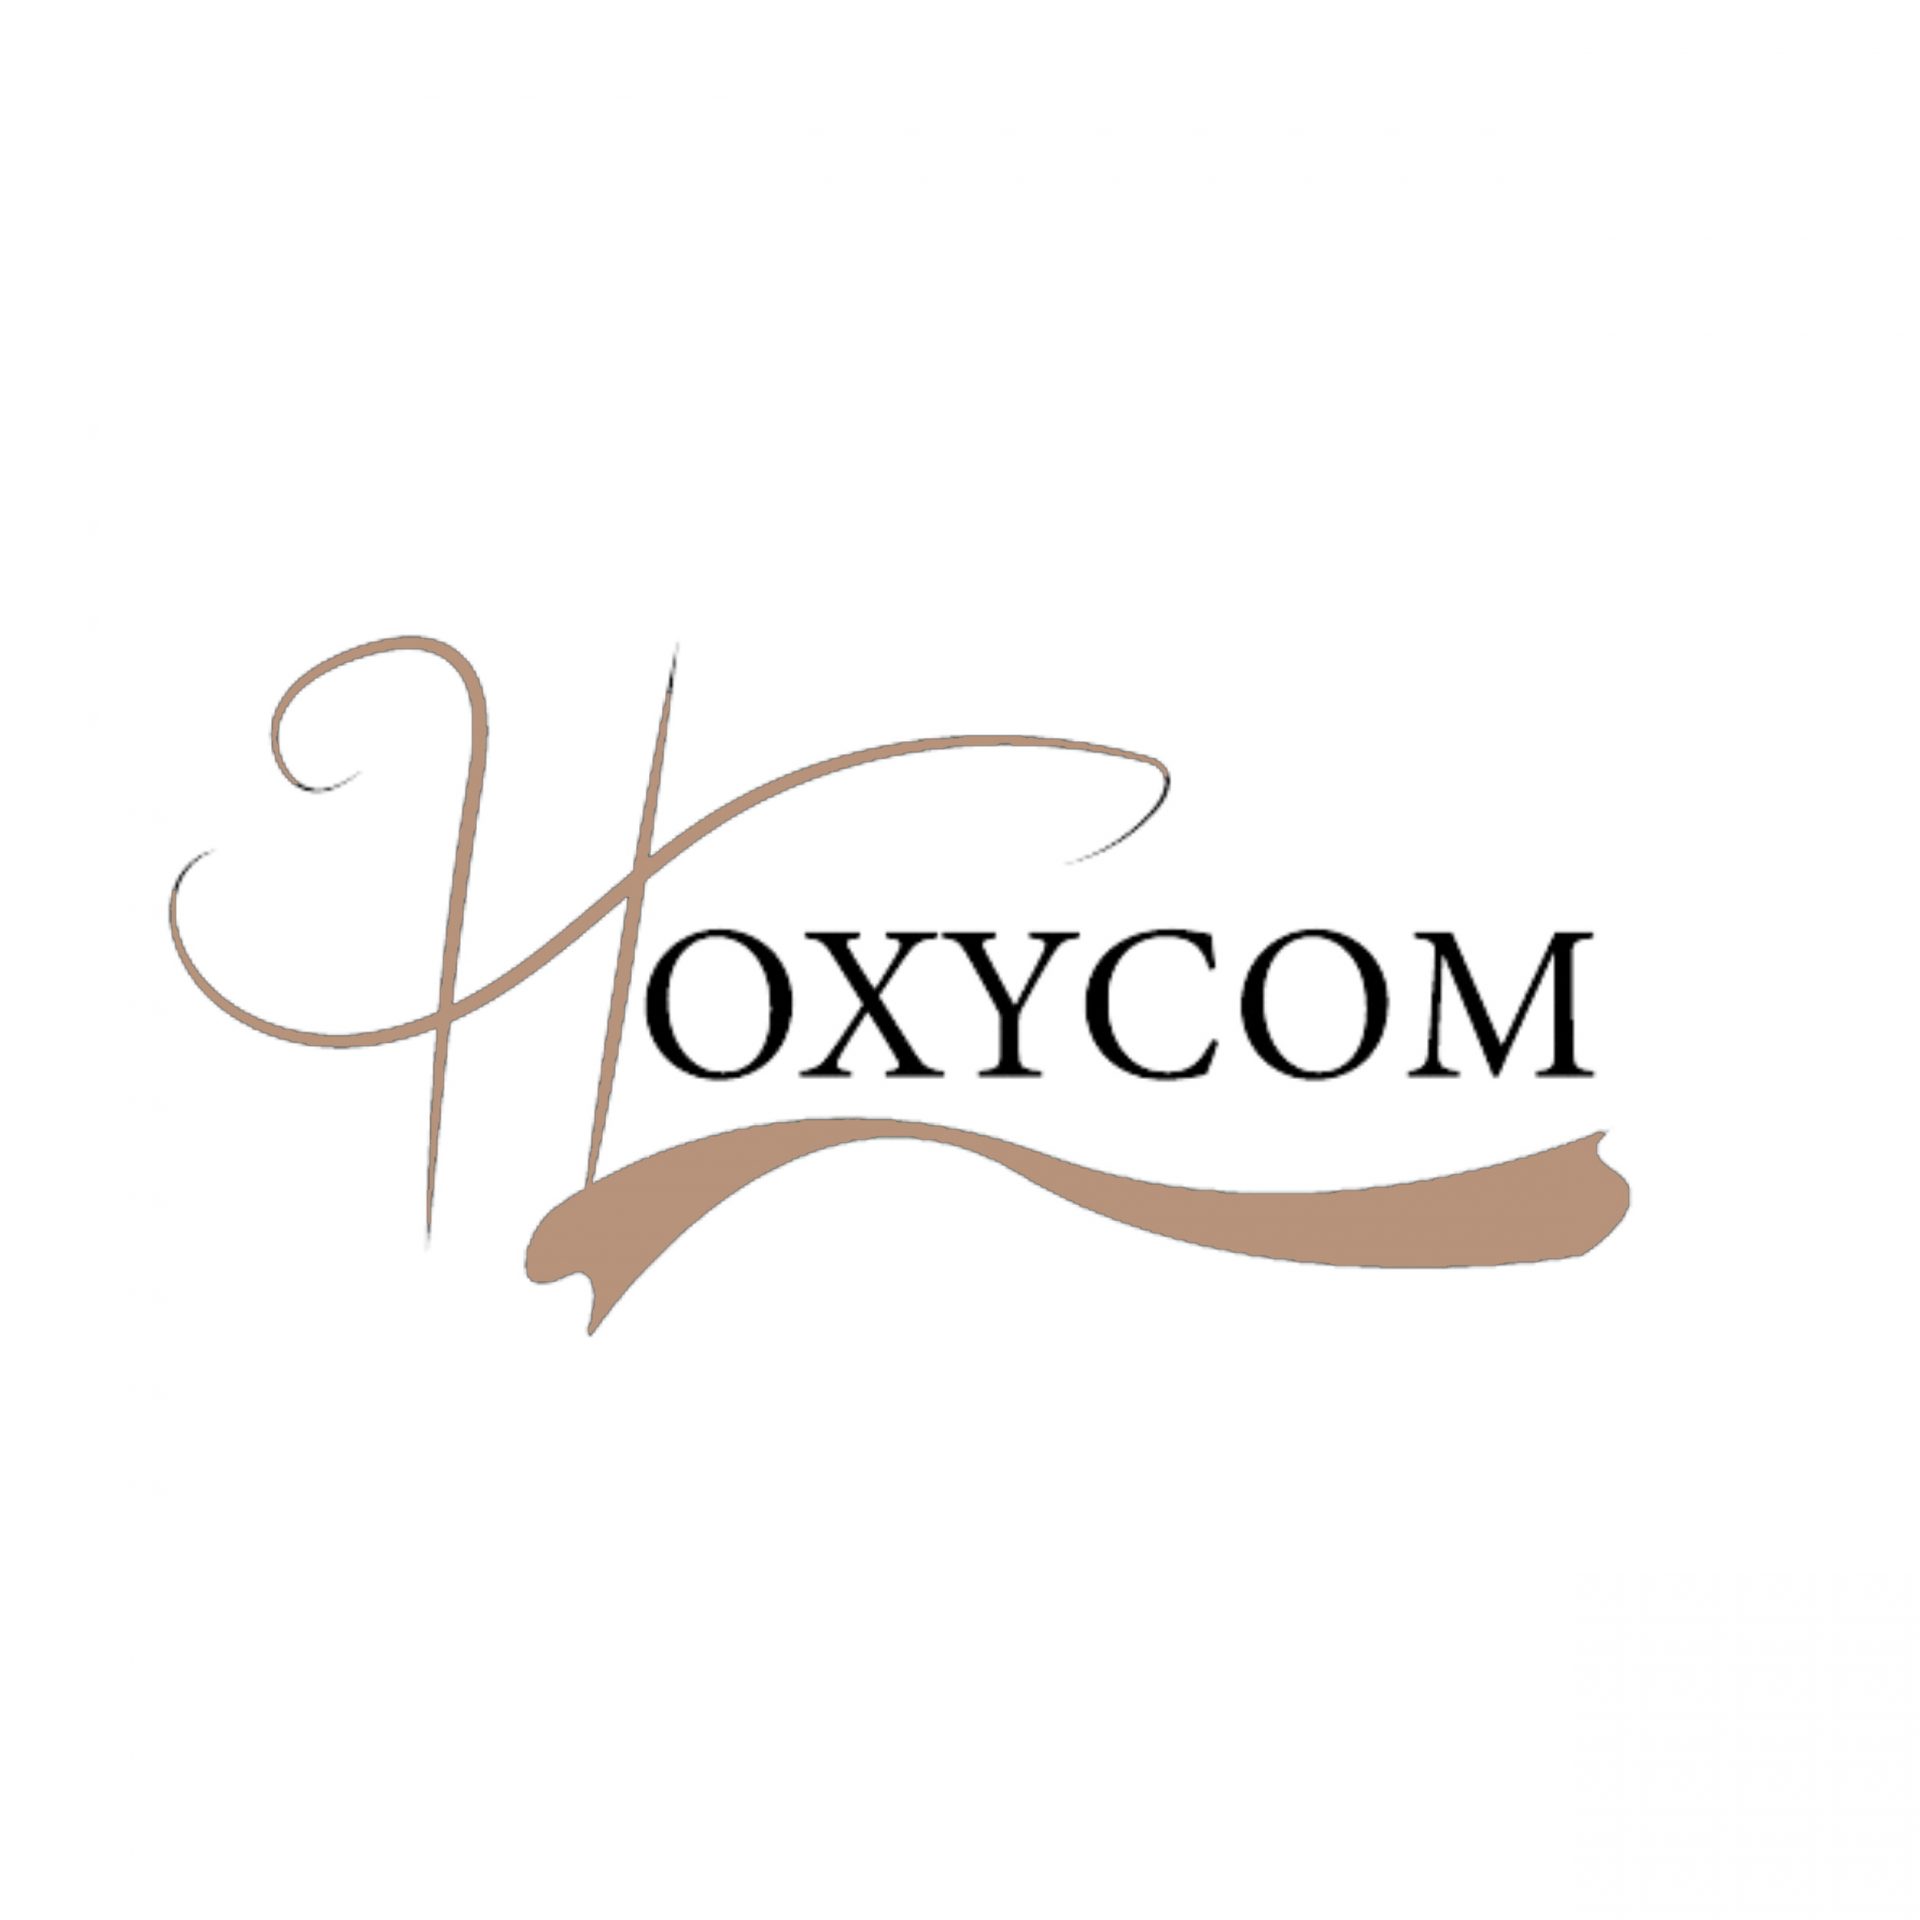 hoxycom